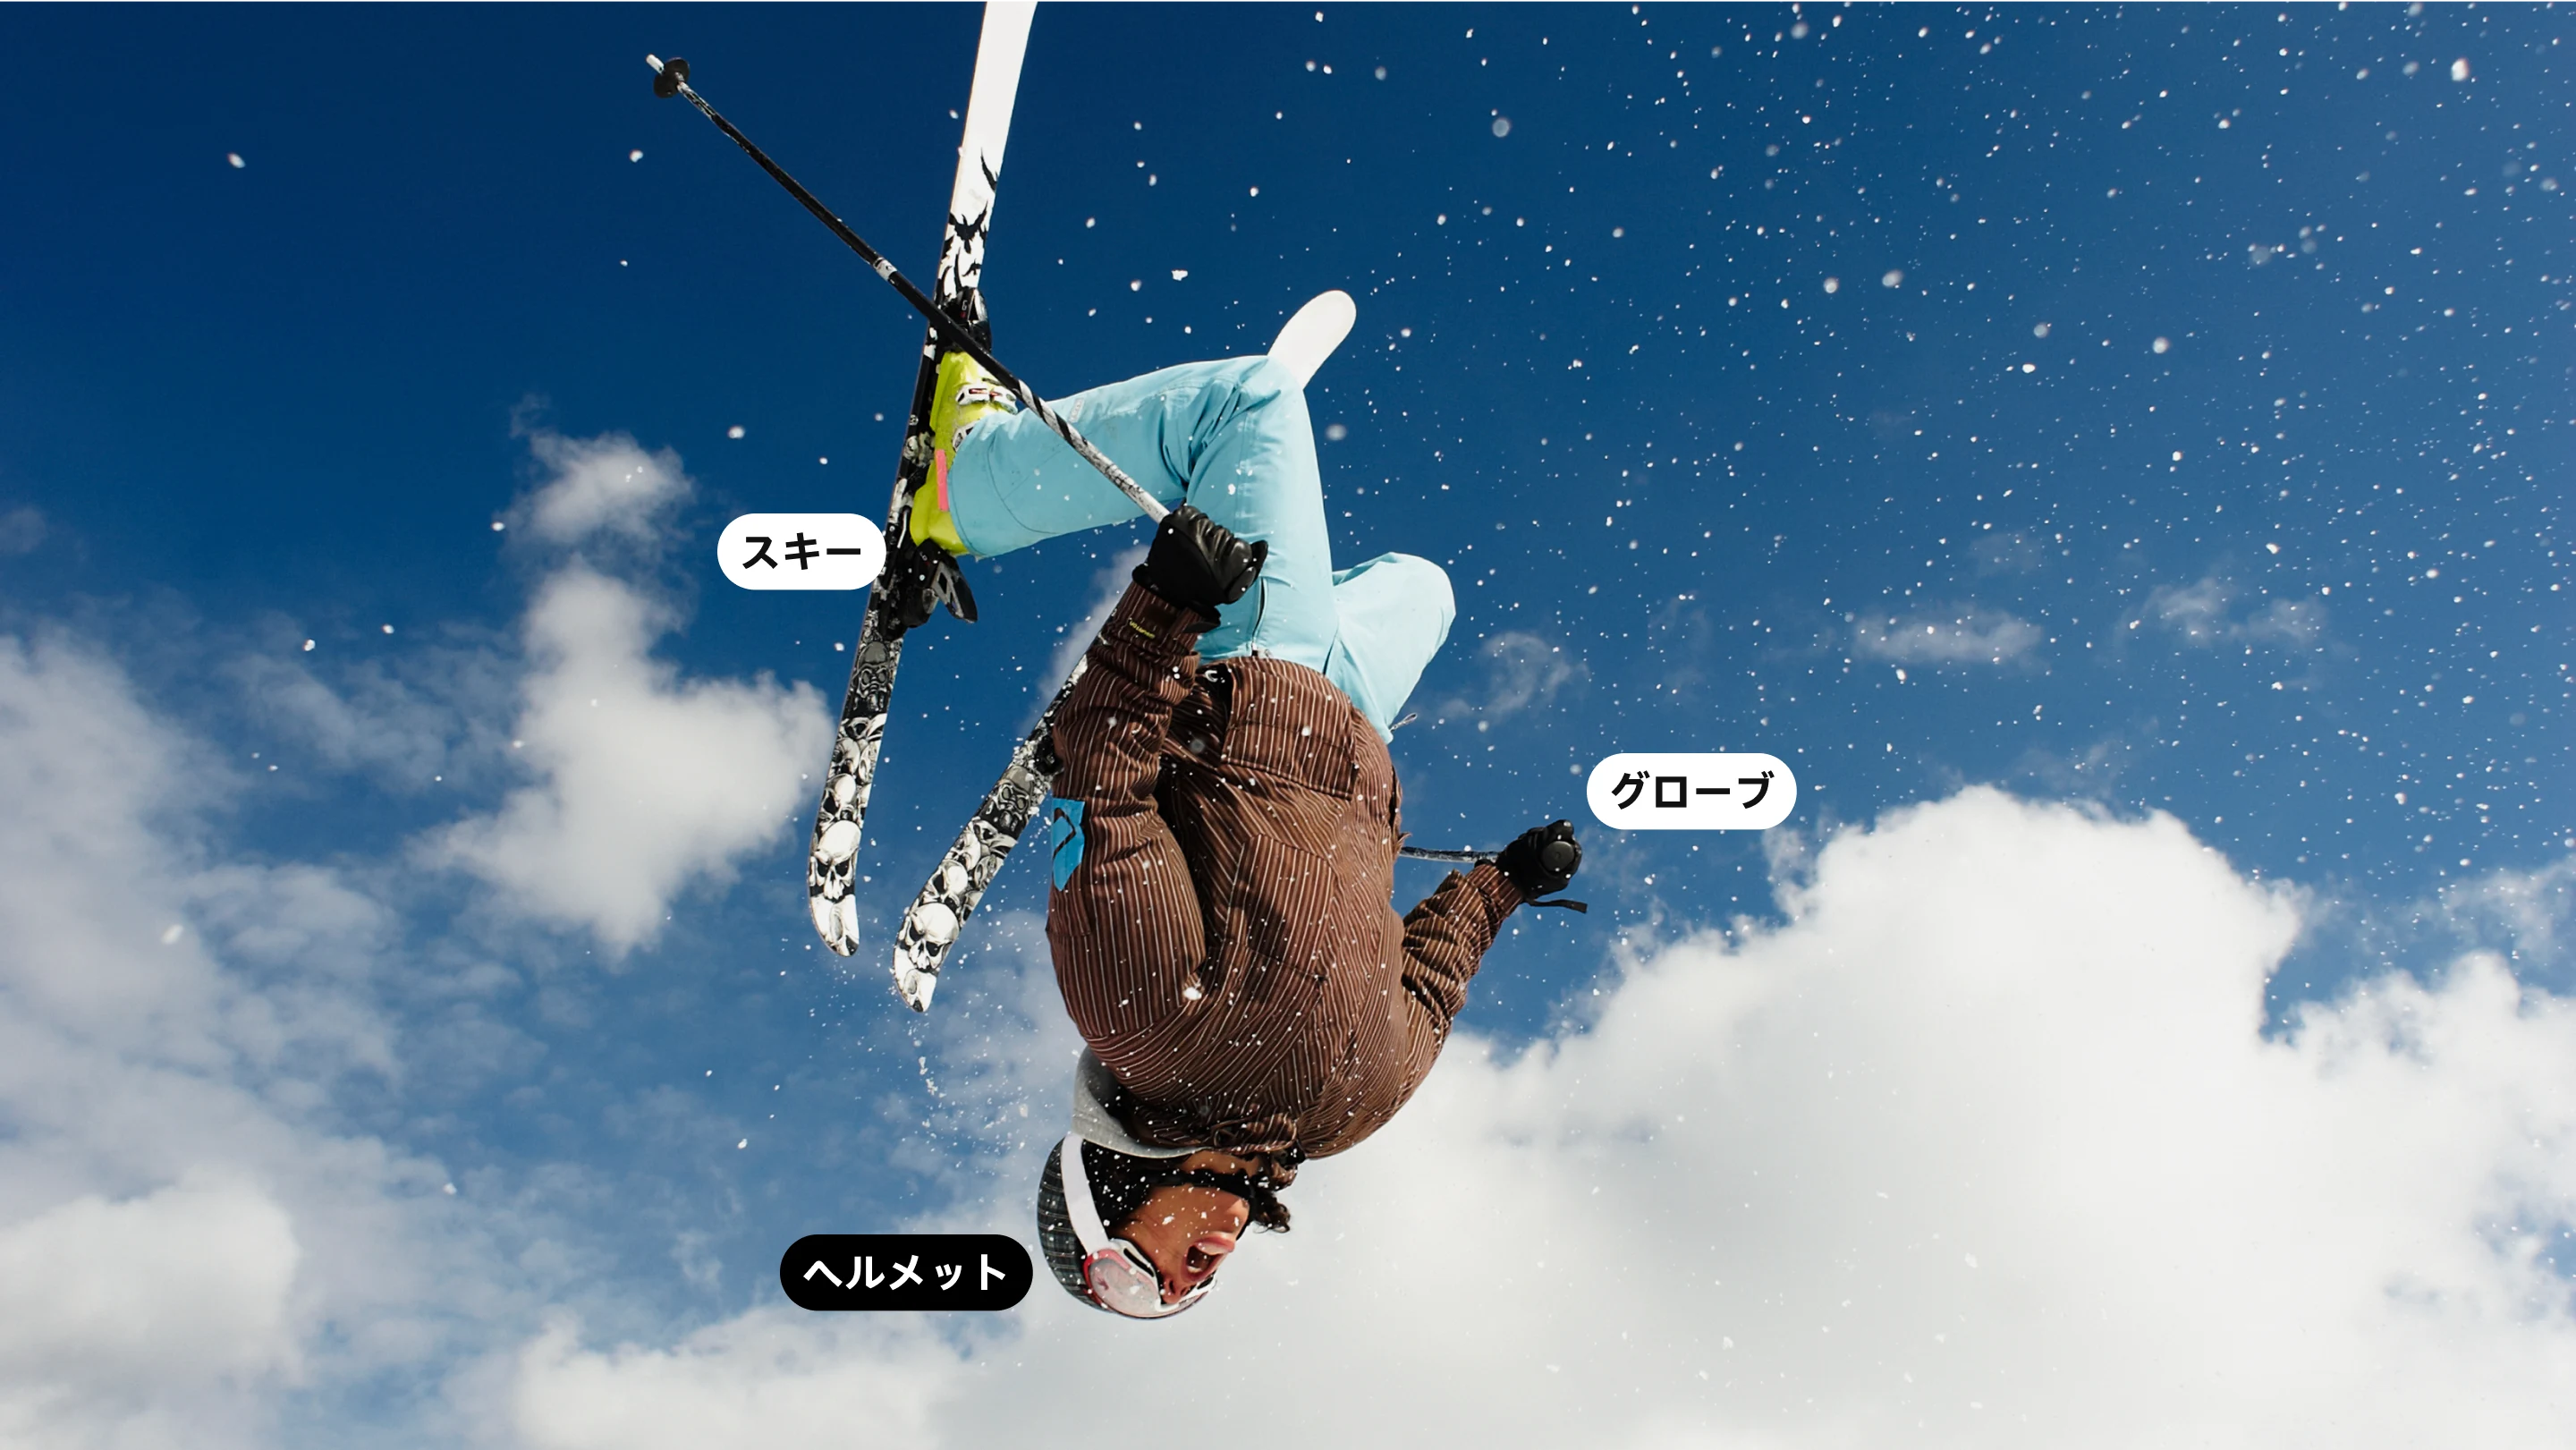 スキーウェアを着てスキーを履き、空中で一回転している女性の姿を捉えたフル画面の画像。